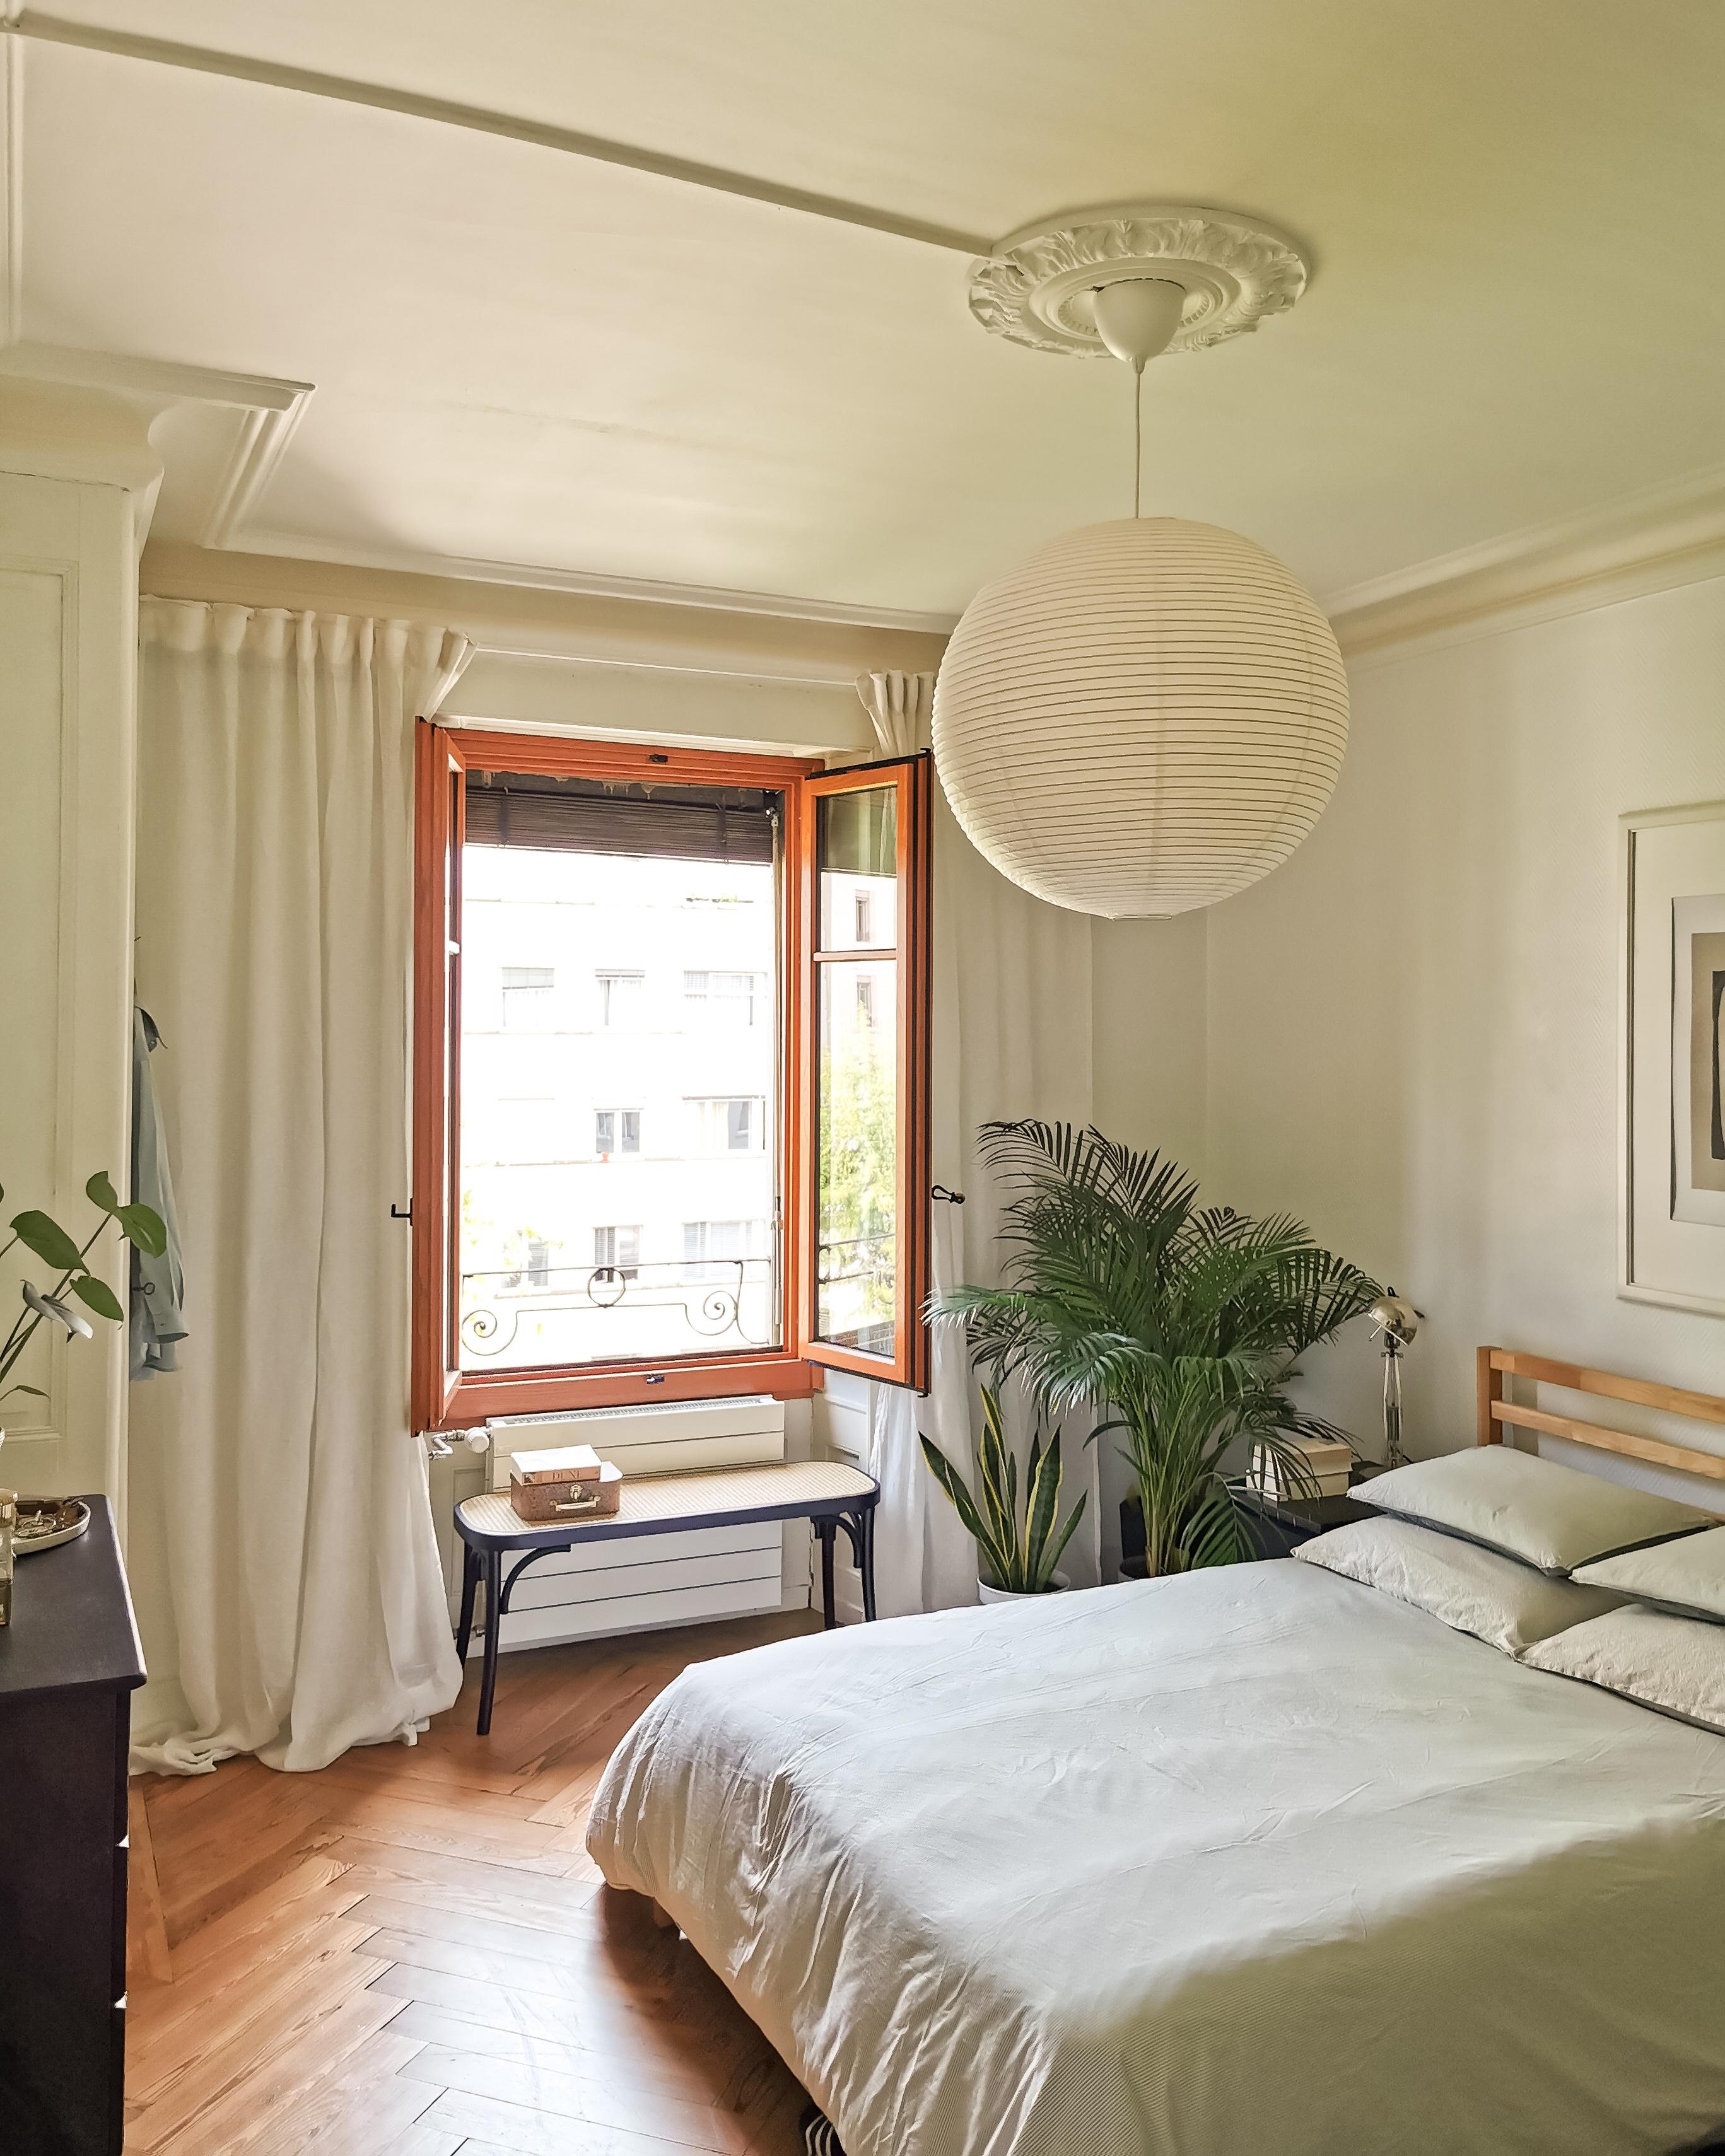 Schlafzimmerblick 1 #schlafzimmer #ricepaperlamp #holzfenster #naturtöne